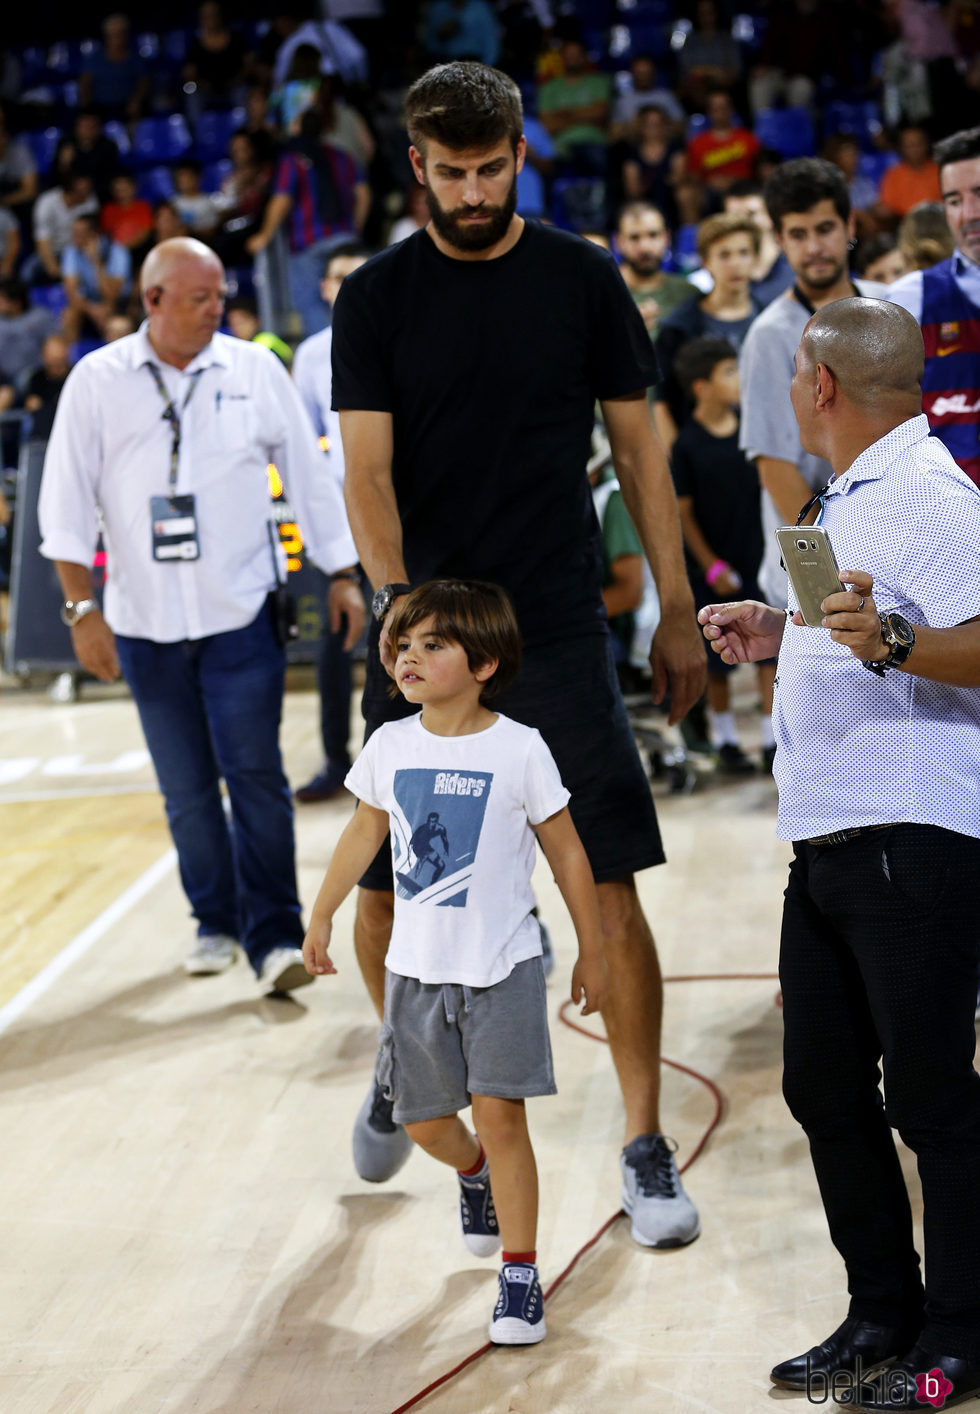 Gerard Piqué y su hijo Milan en un partido de baloncesto del Barça